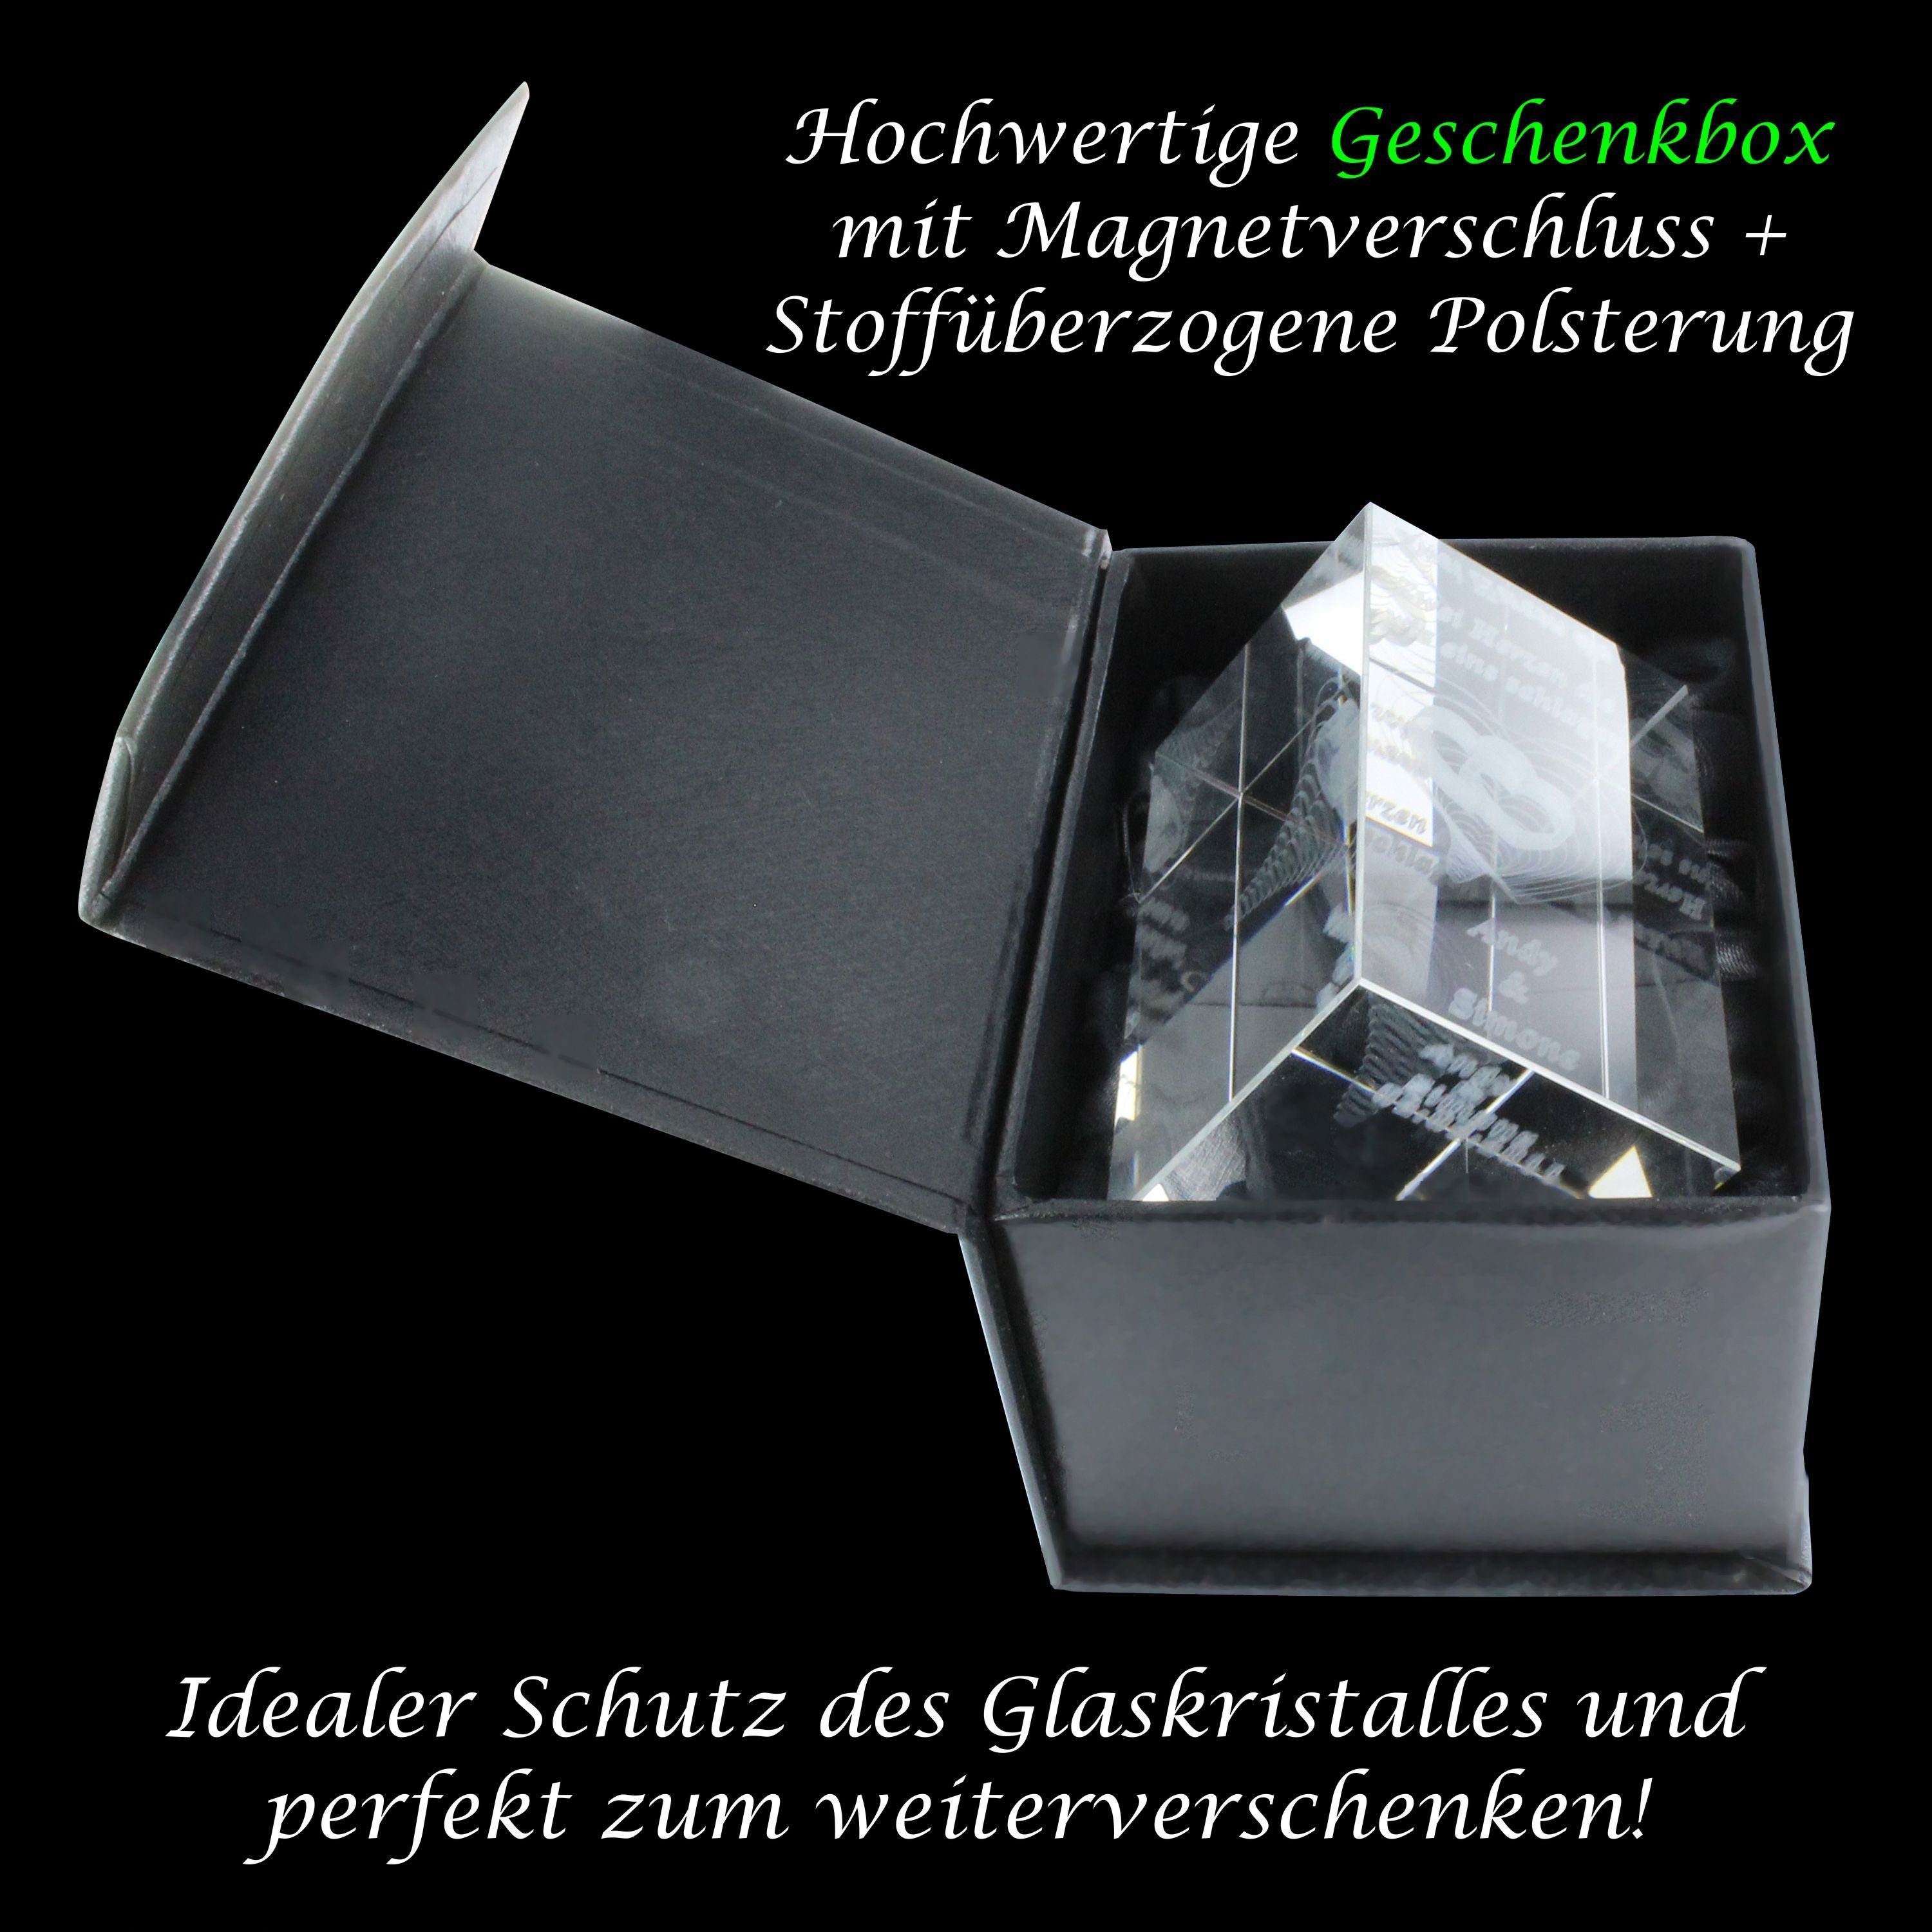 VIP-LASER Gedanke Made Herz Germany, Wenn 3D Geschenkbox, Dekofigur jeder in Dich..., Hochwertige verziertes an Glasquader Familienbetrieb